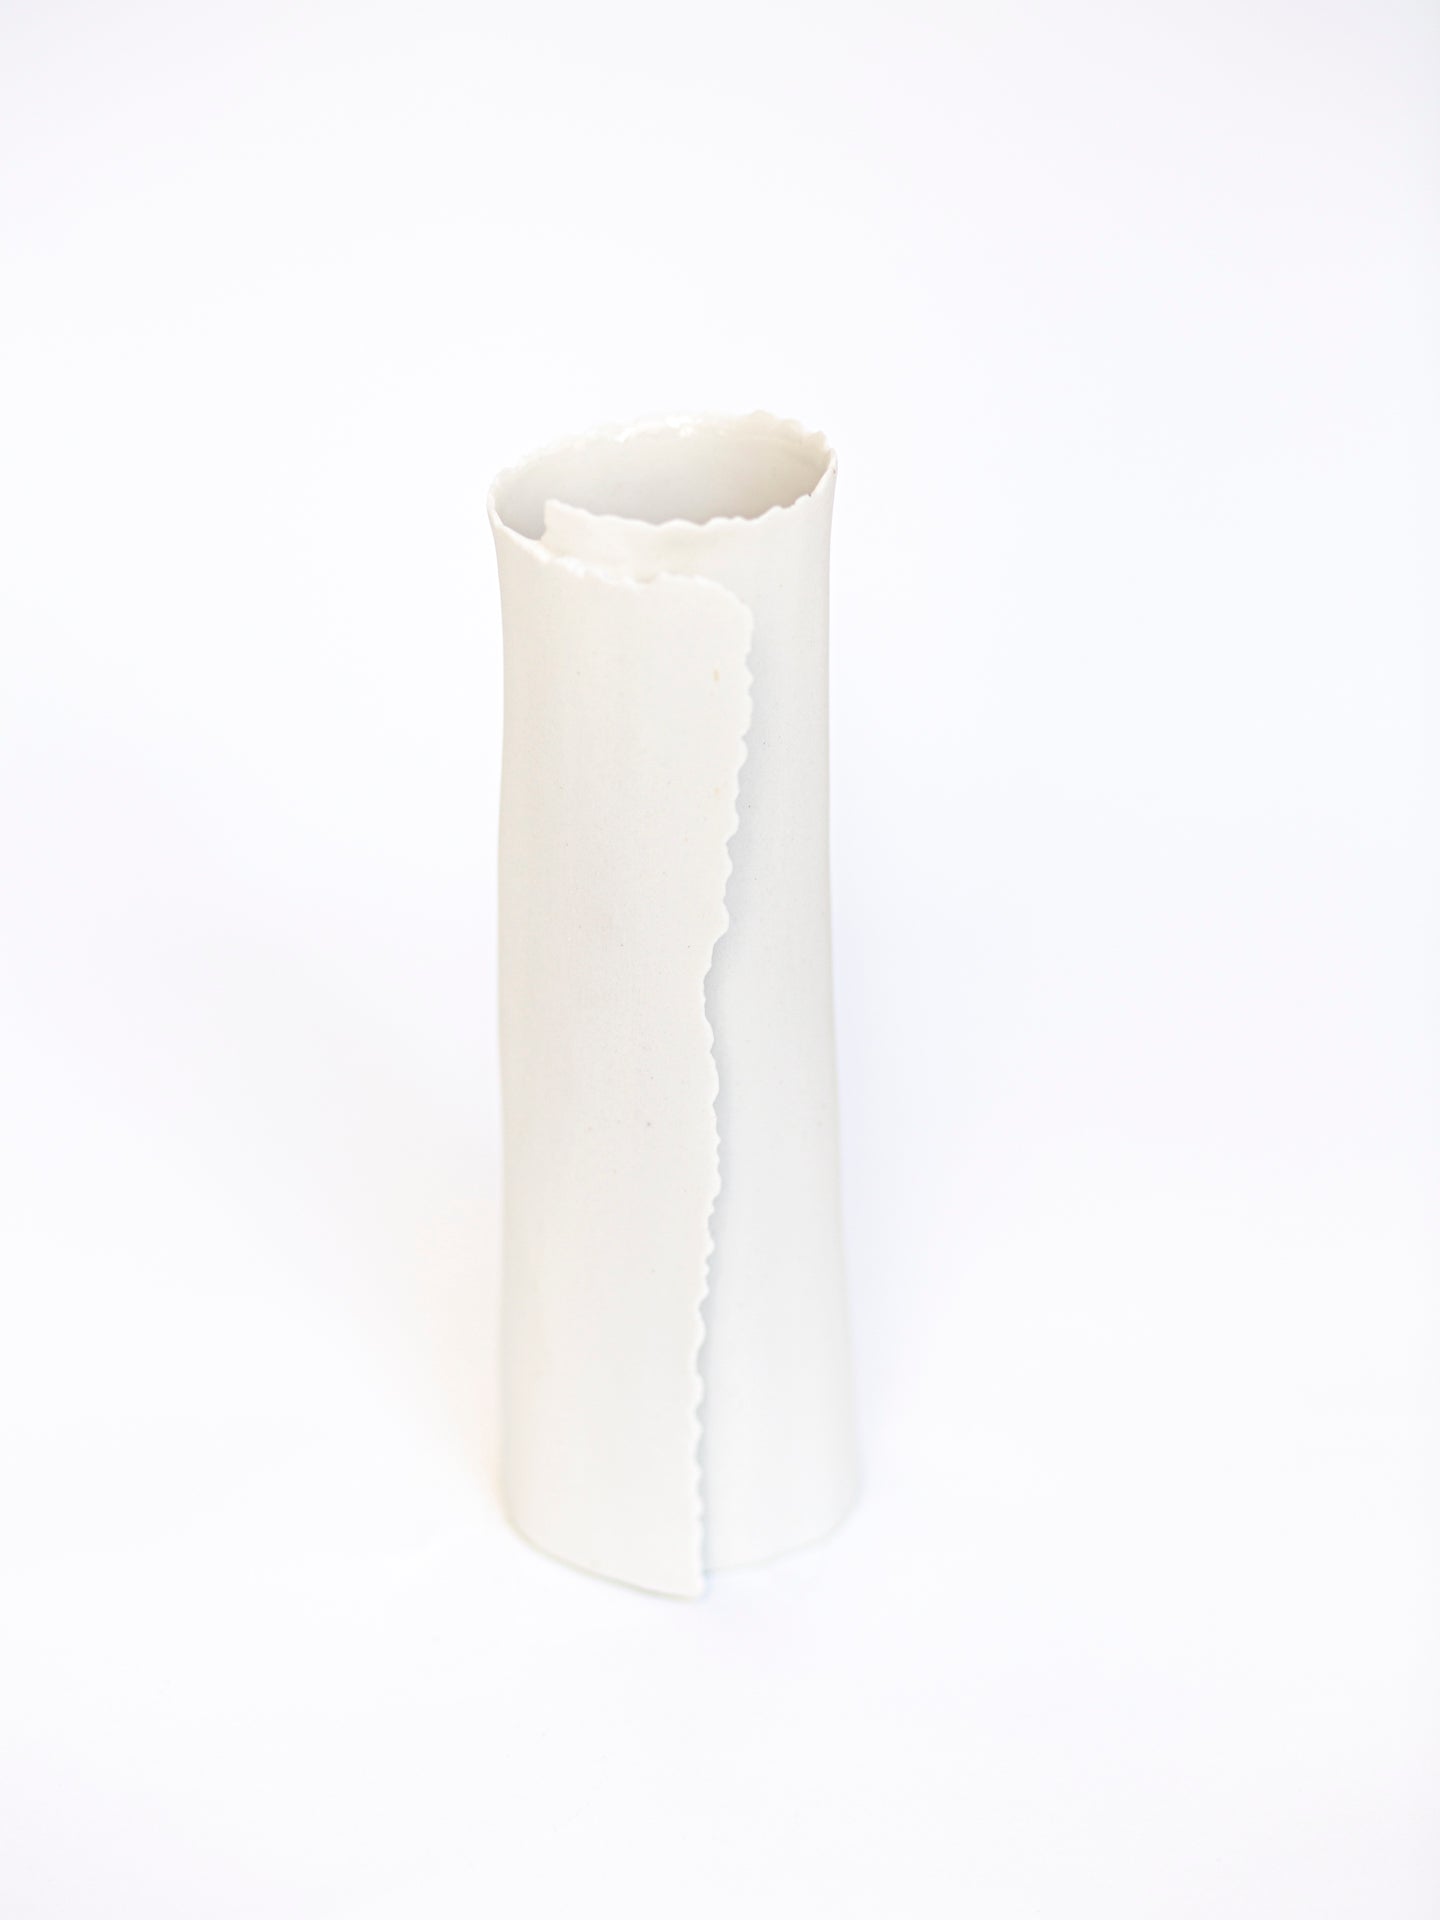 ARK 1 vase porcelaine en biscuit H = 18cm, D = 5,5cm